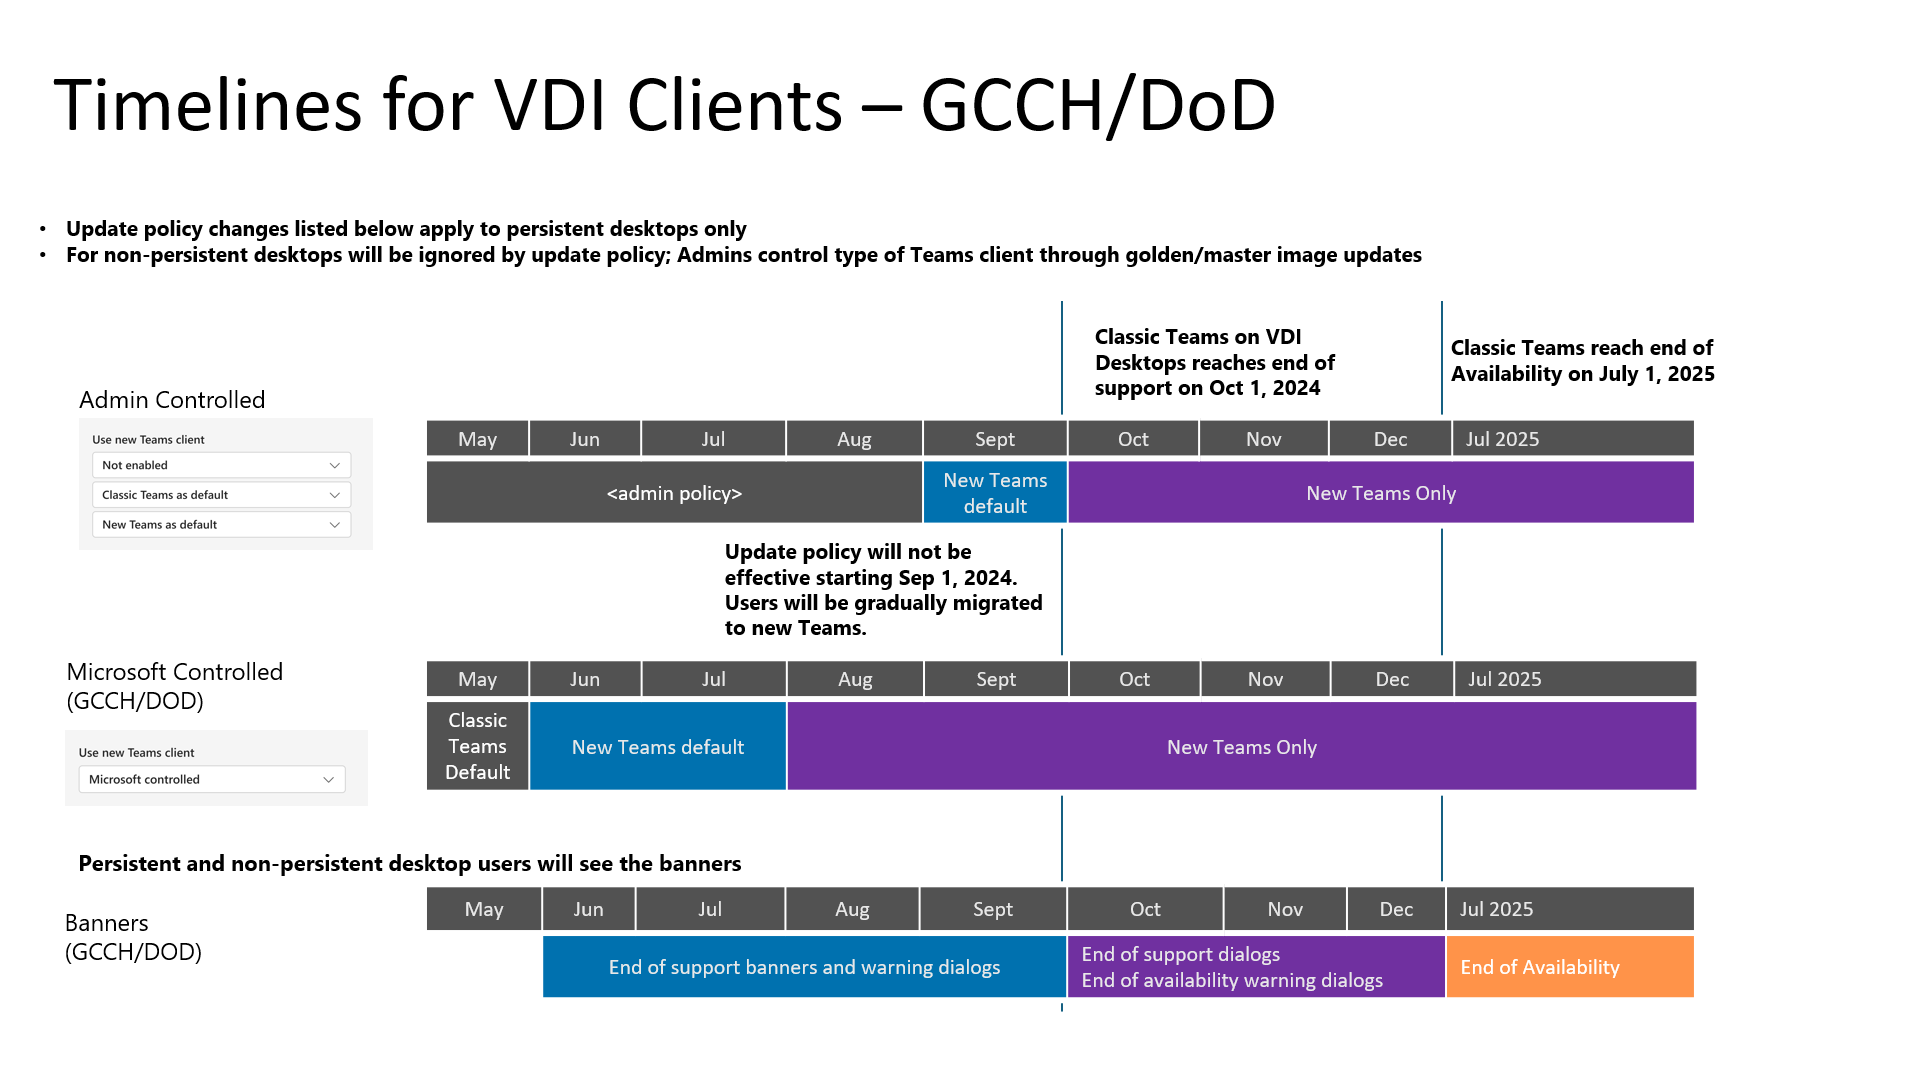 Диаграмма, показывающая временные шкалы для классических Teams и новых Teams для VDI, специфичных для клиентов GCCH и DoD.